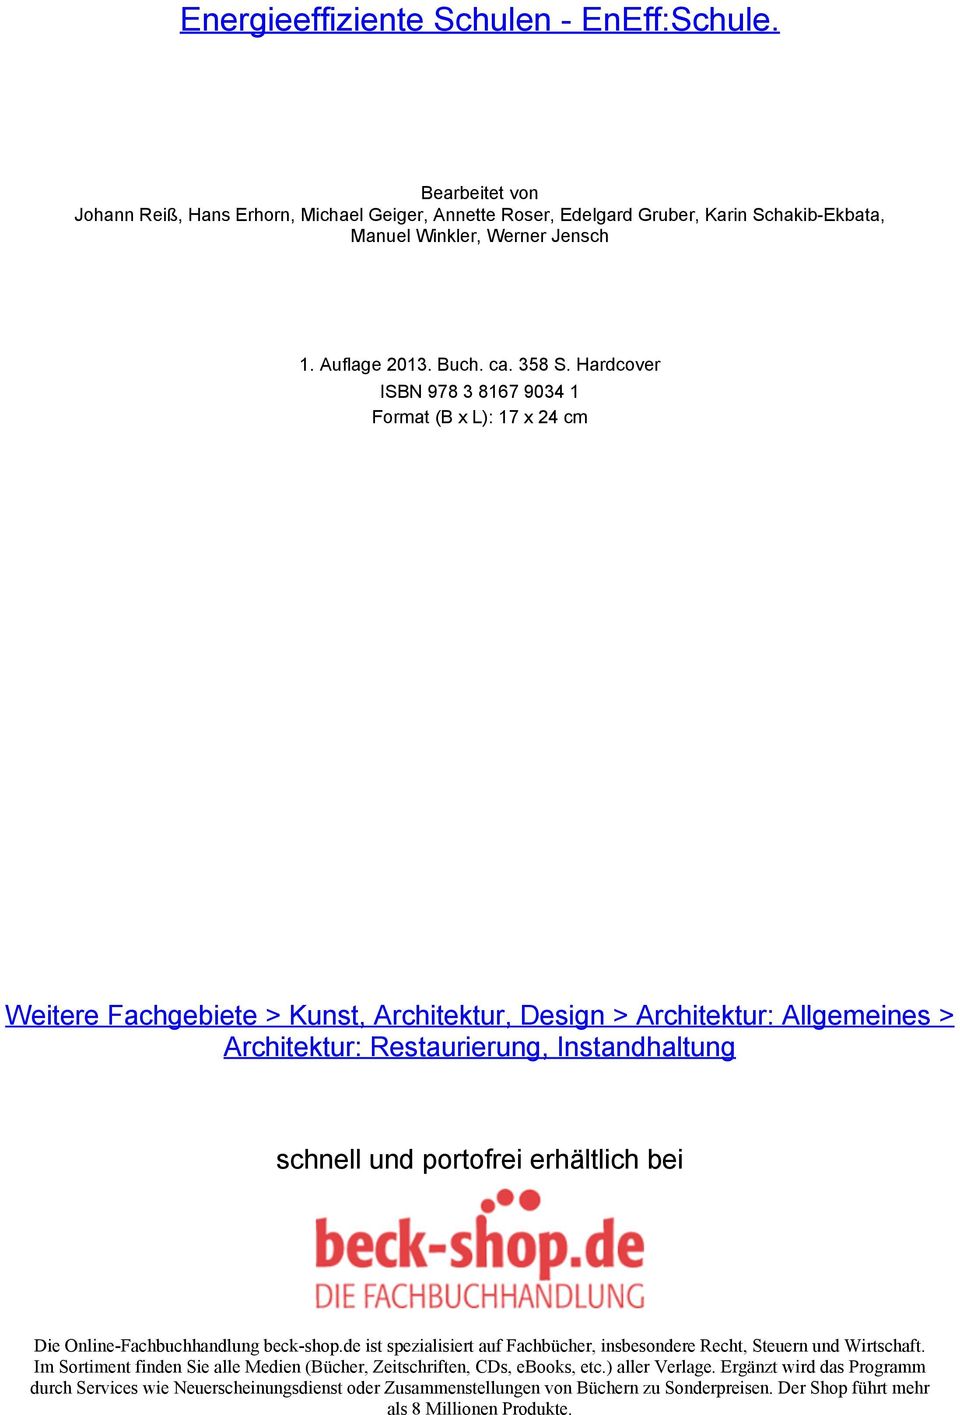 Hardcover ISBN 978 3 8167 9034 1 Format (B x L): 17 x 24 cm Weitere Fachgebiete > Kunst, Architektur, Design > Architektur: Allgemeines > Architektur: Restaurierung, Instandhaltung schnell und